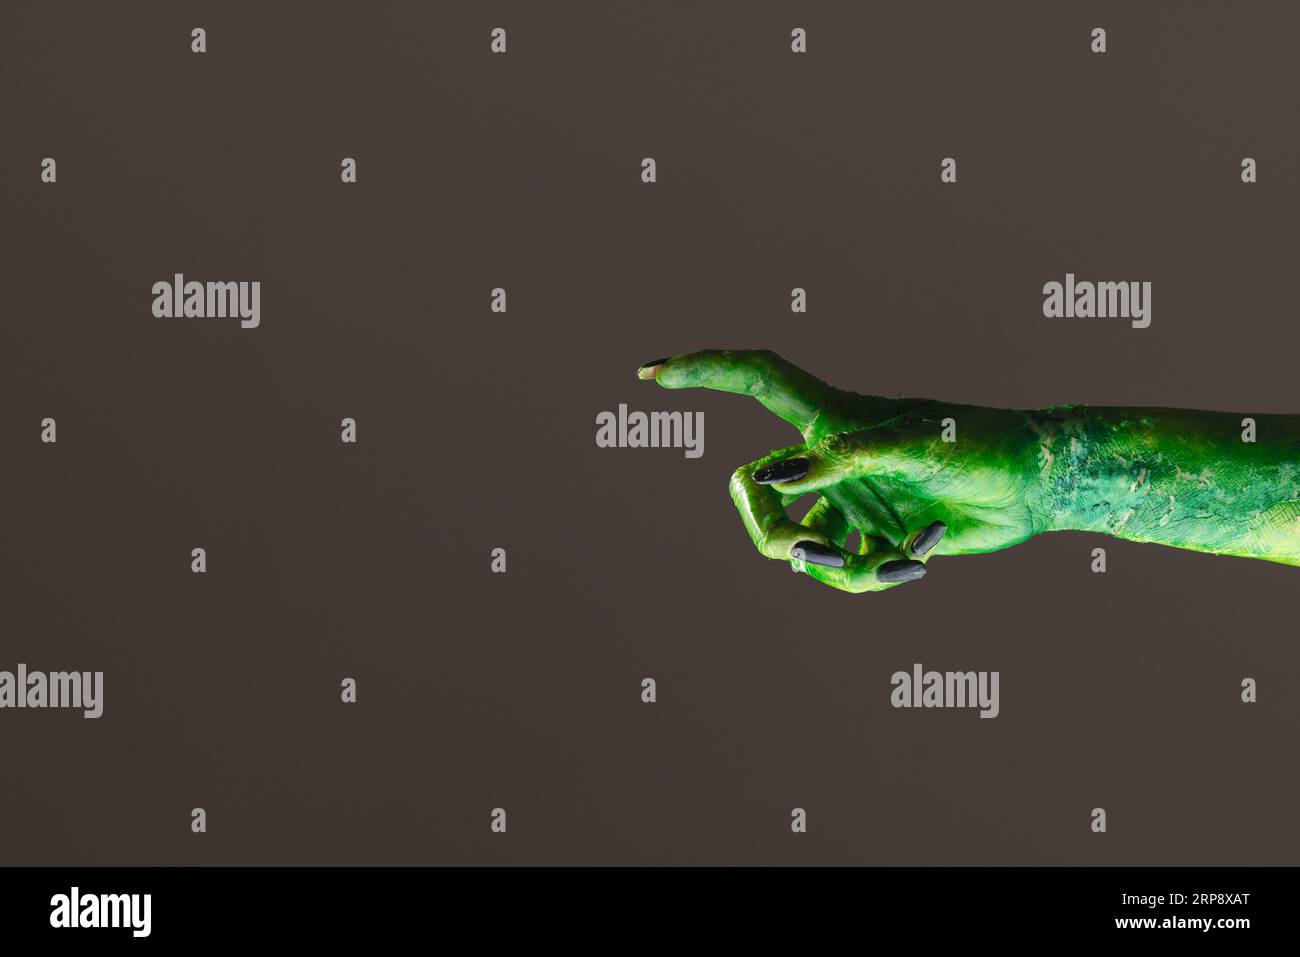 Main de monstre vert avec des ongles noirs pointant avec le doigt sur fond gris Banque D'Images